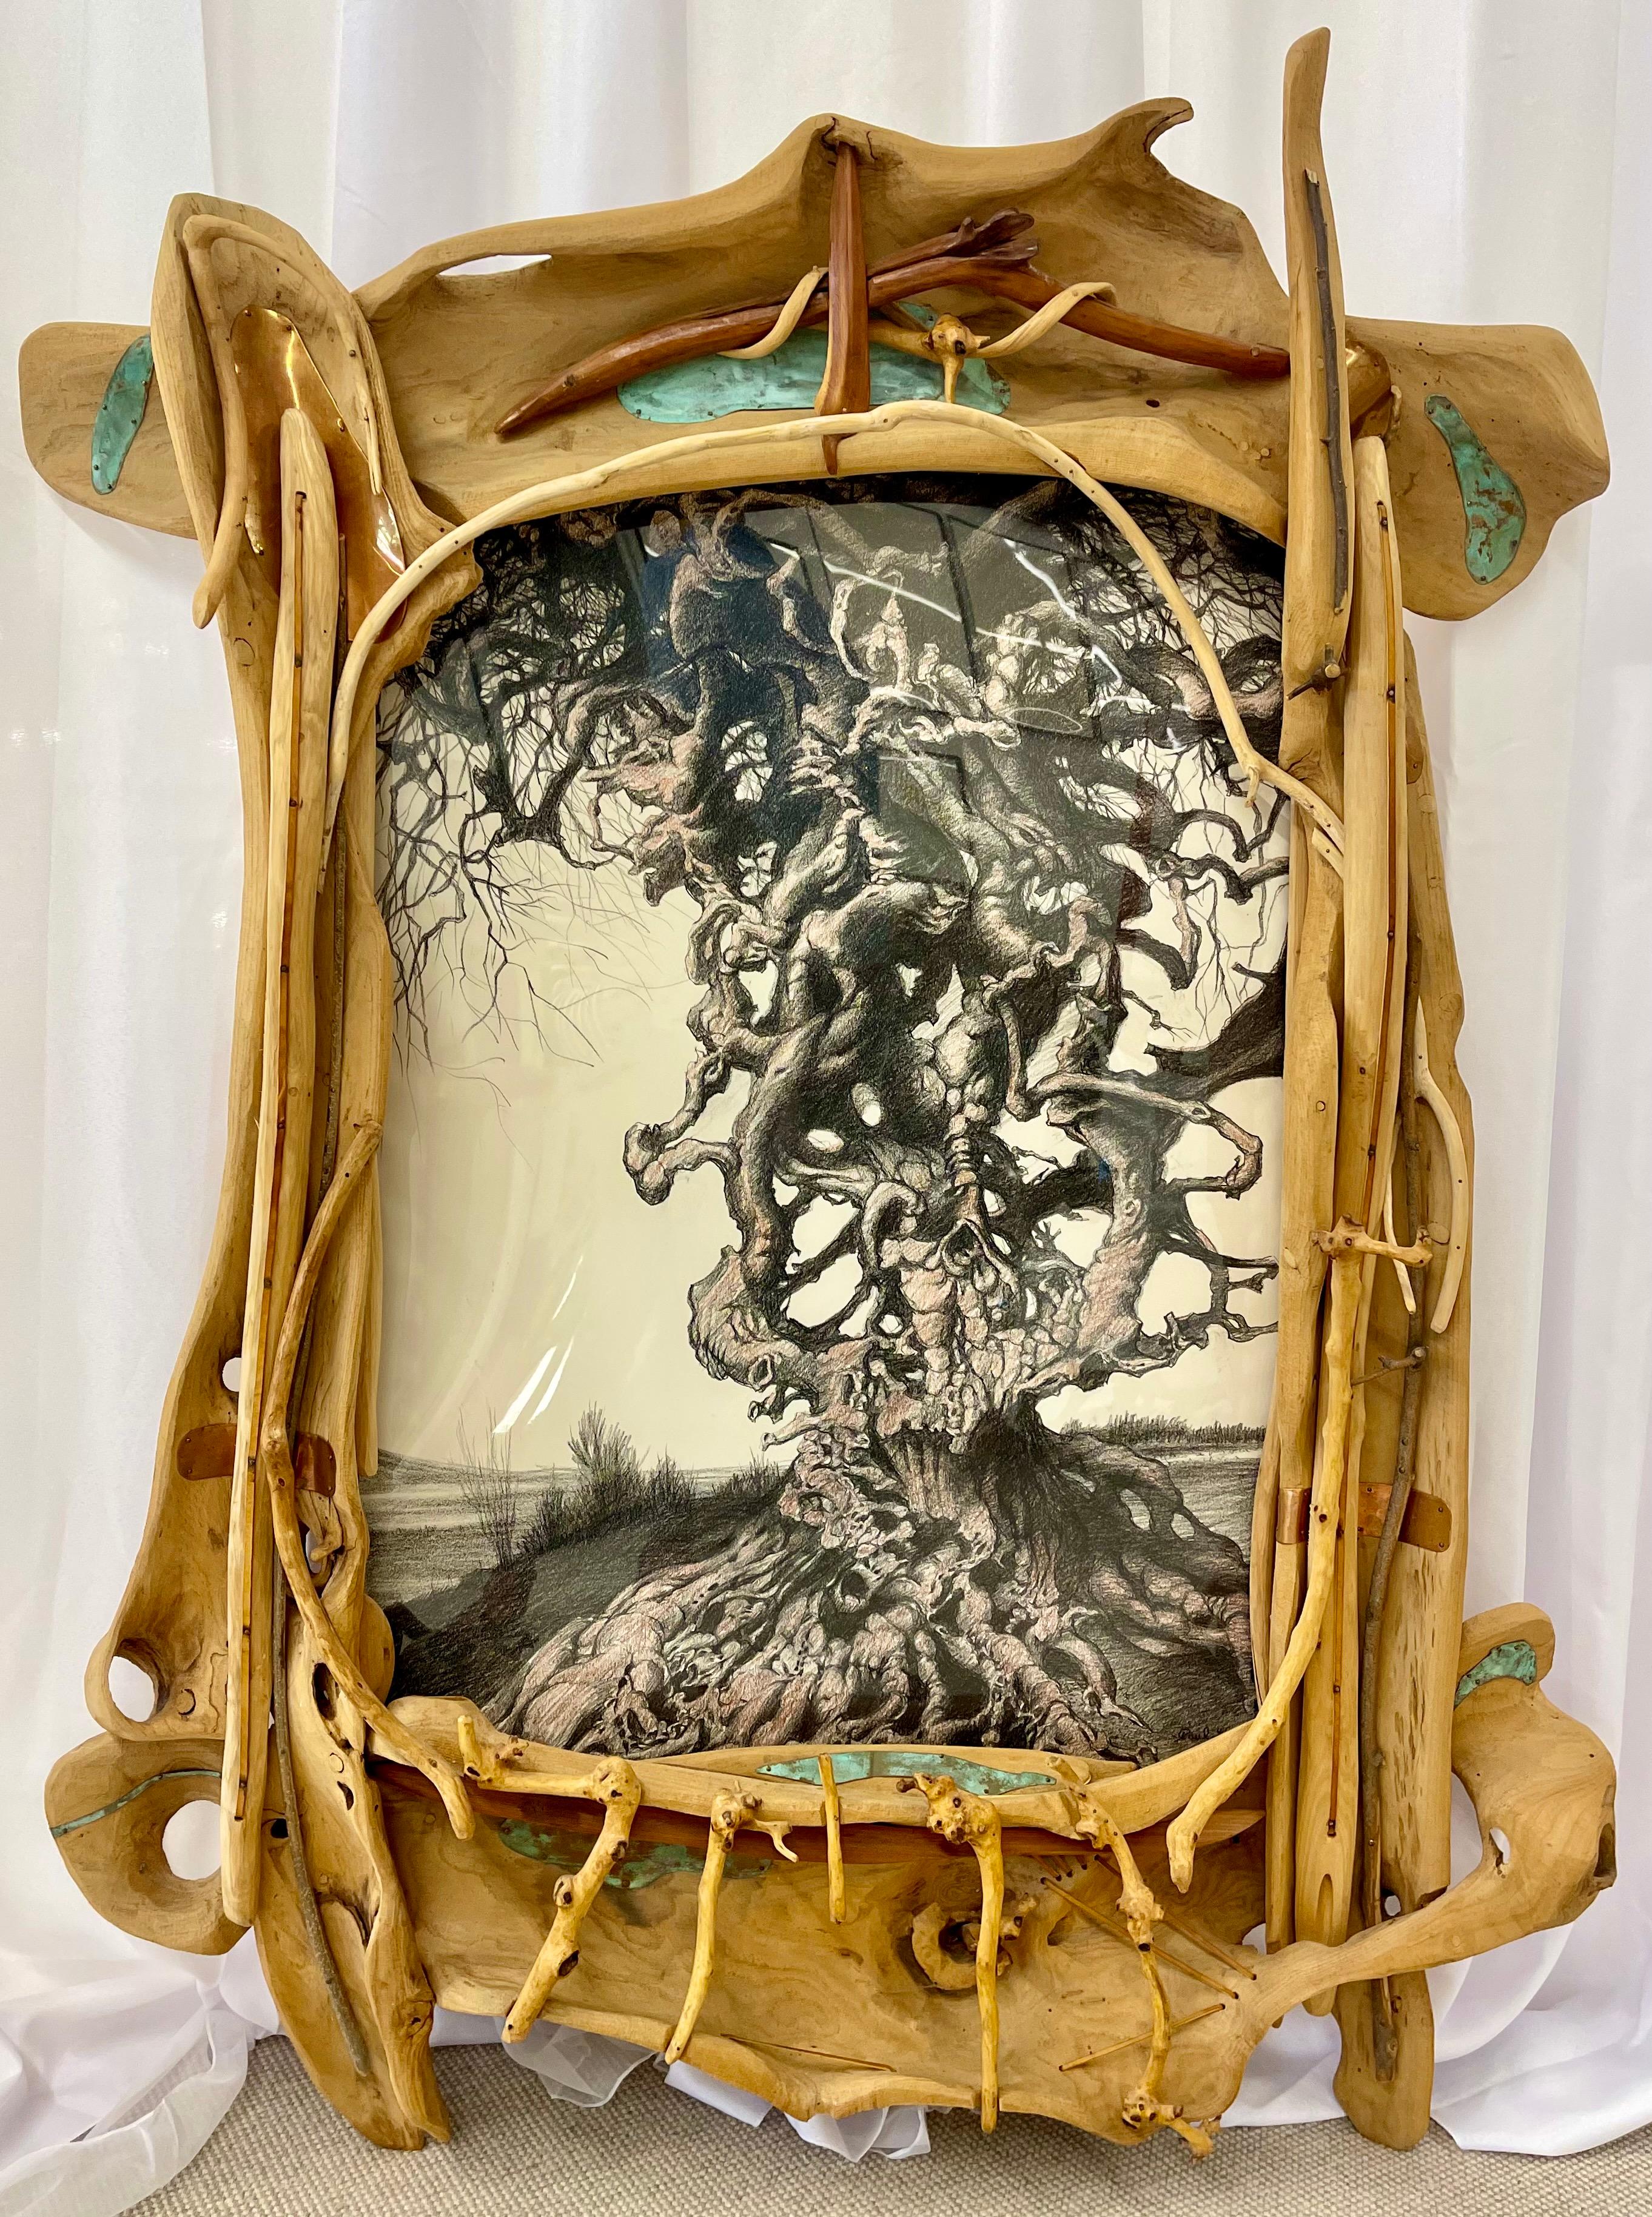 Exzentrische Art Nouveau Rustic Rahmen mit einem Signed Paul Gorka Zeichnung großen exotischen Holzrahmen mit stark oxidierten Metall Details im gesamten. Ein atemberaubend anmutender Rahmen, der sich leicht in einen Spiegel verwandeln lässt.